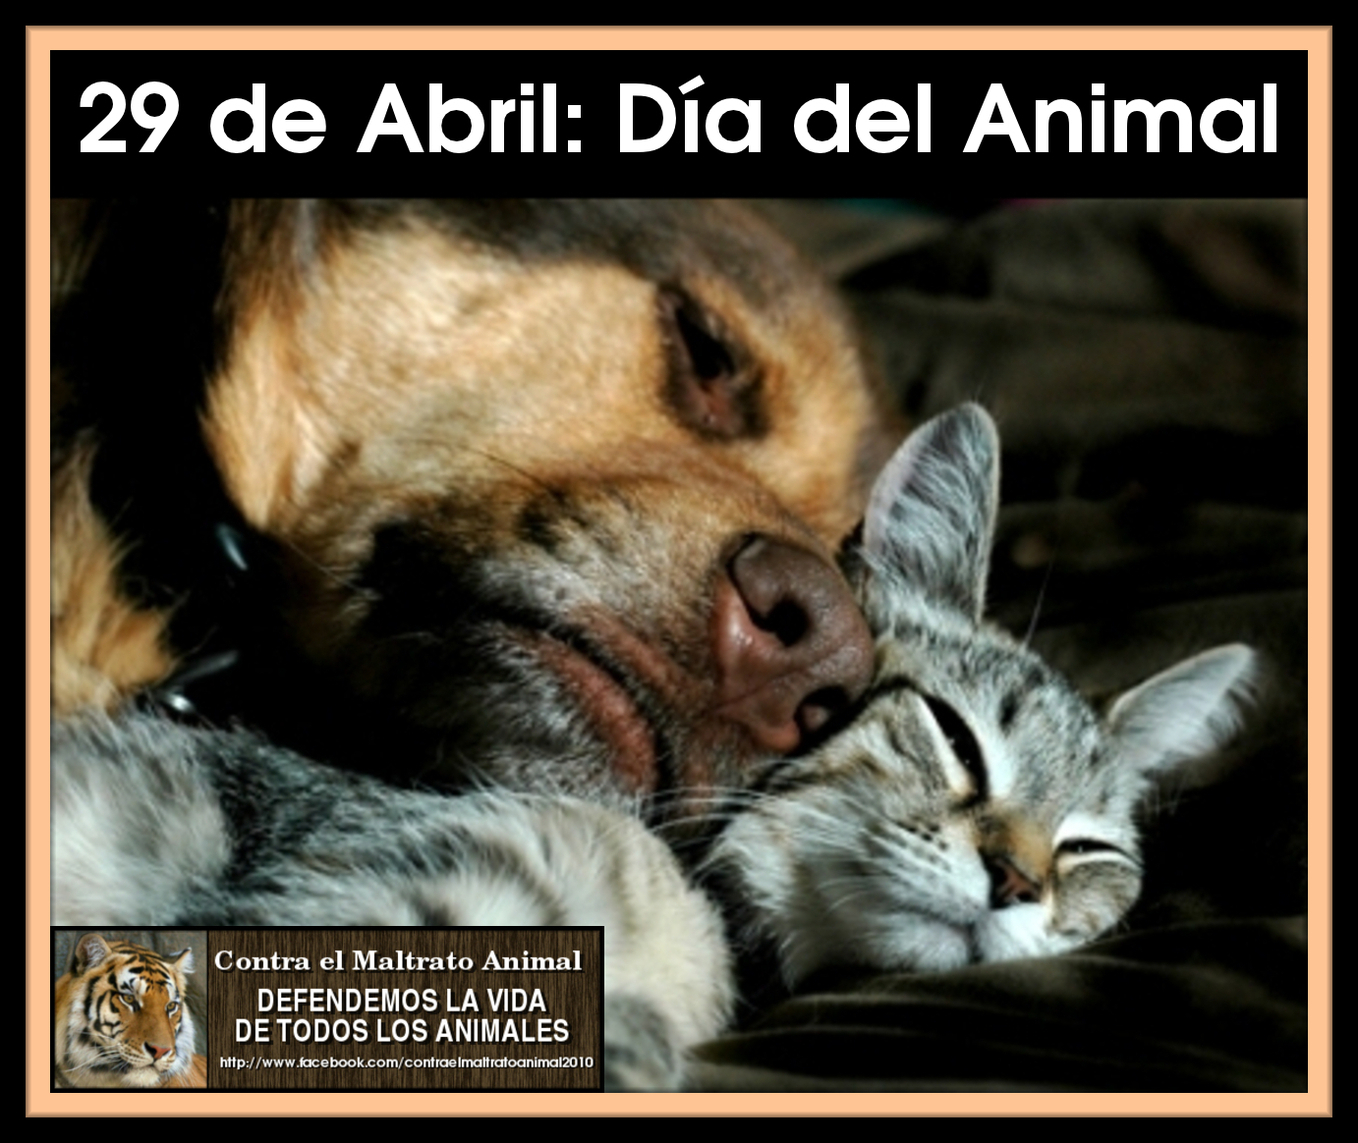 29+de+abril+Dia+del+Animal.jpg